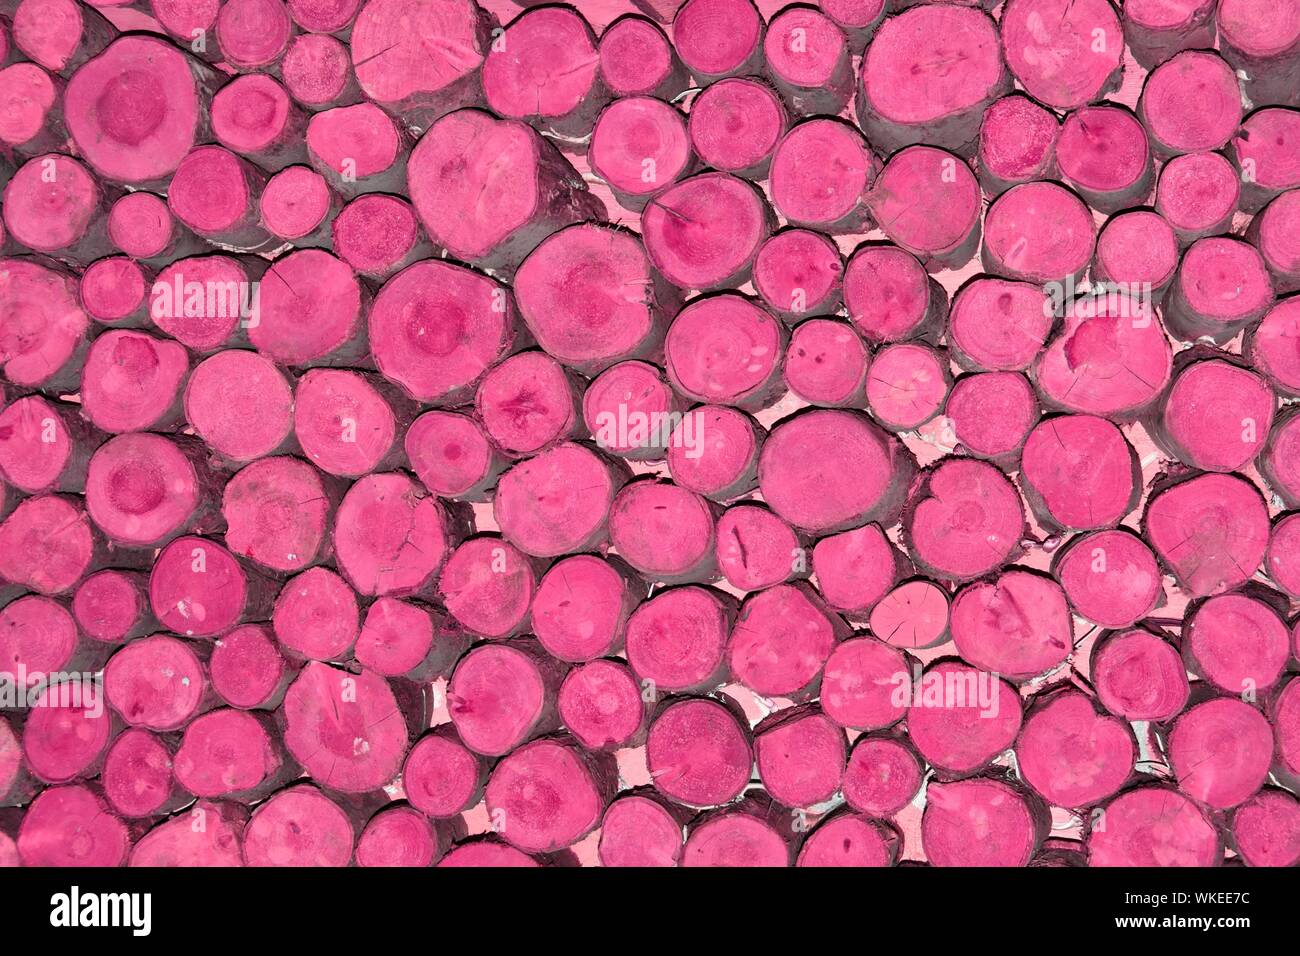 Zusammenfassung Hintergrund Muster Bild manipuliert rosa Farbe an den Enden gestapelt kurze Längen von random Durchmesser runde Schnittholz angewandte Protokolle England Großbritannien Stockfoto